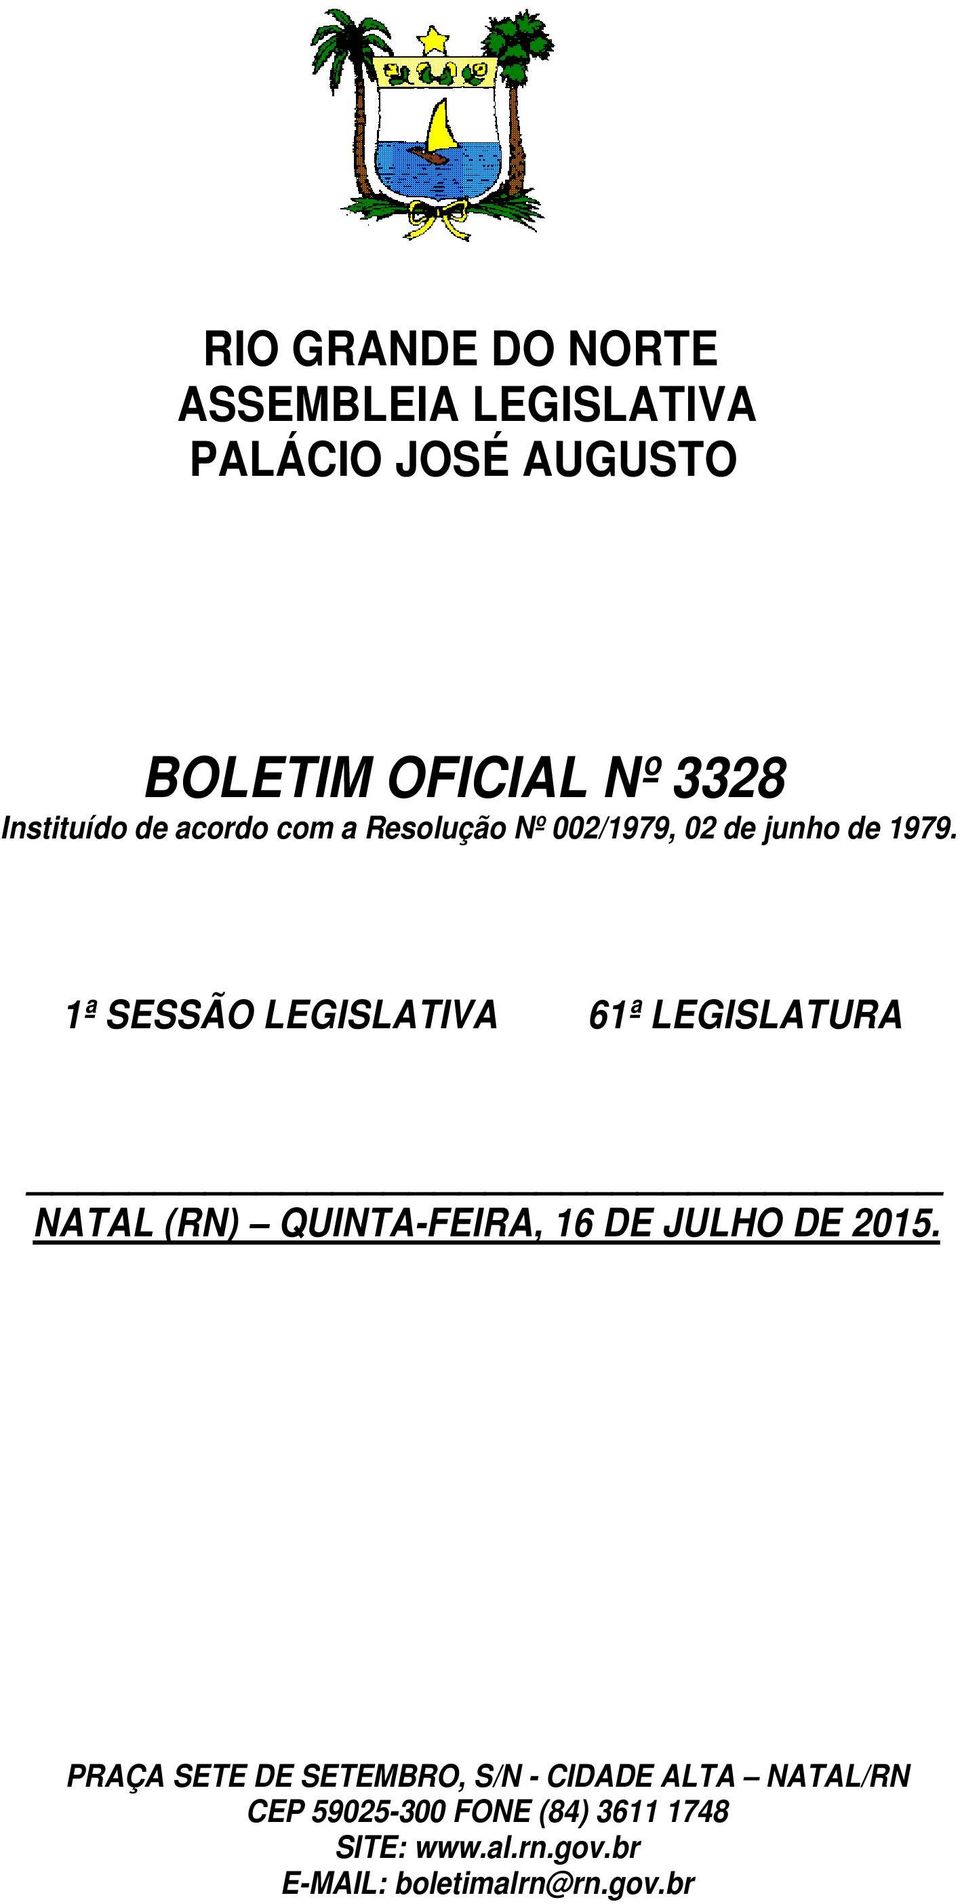 1ª SESSÃO LEGISLATIVA 61ª LEGISLATURA NATAL (RN) QUINTA-FEIRA, 16 DE JULHO DE 2015.